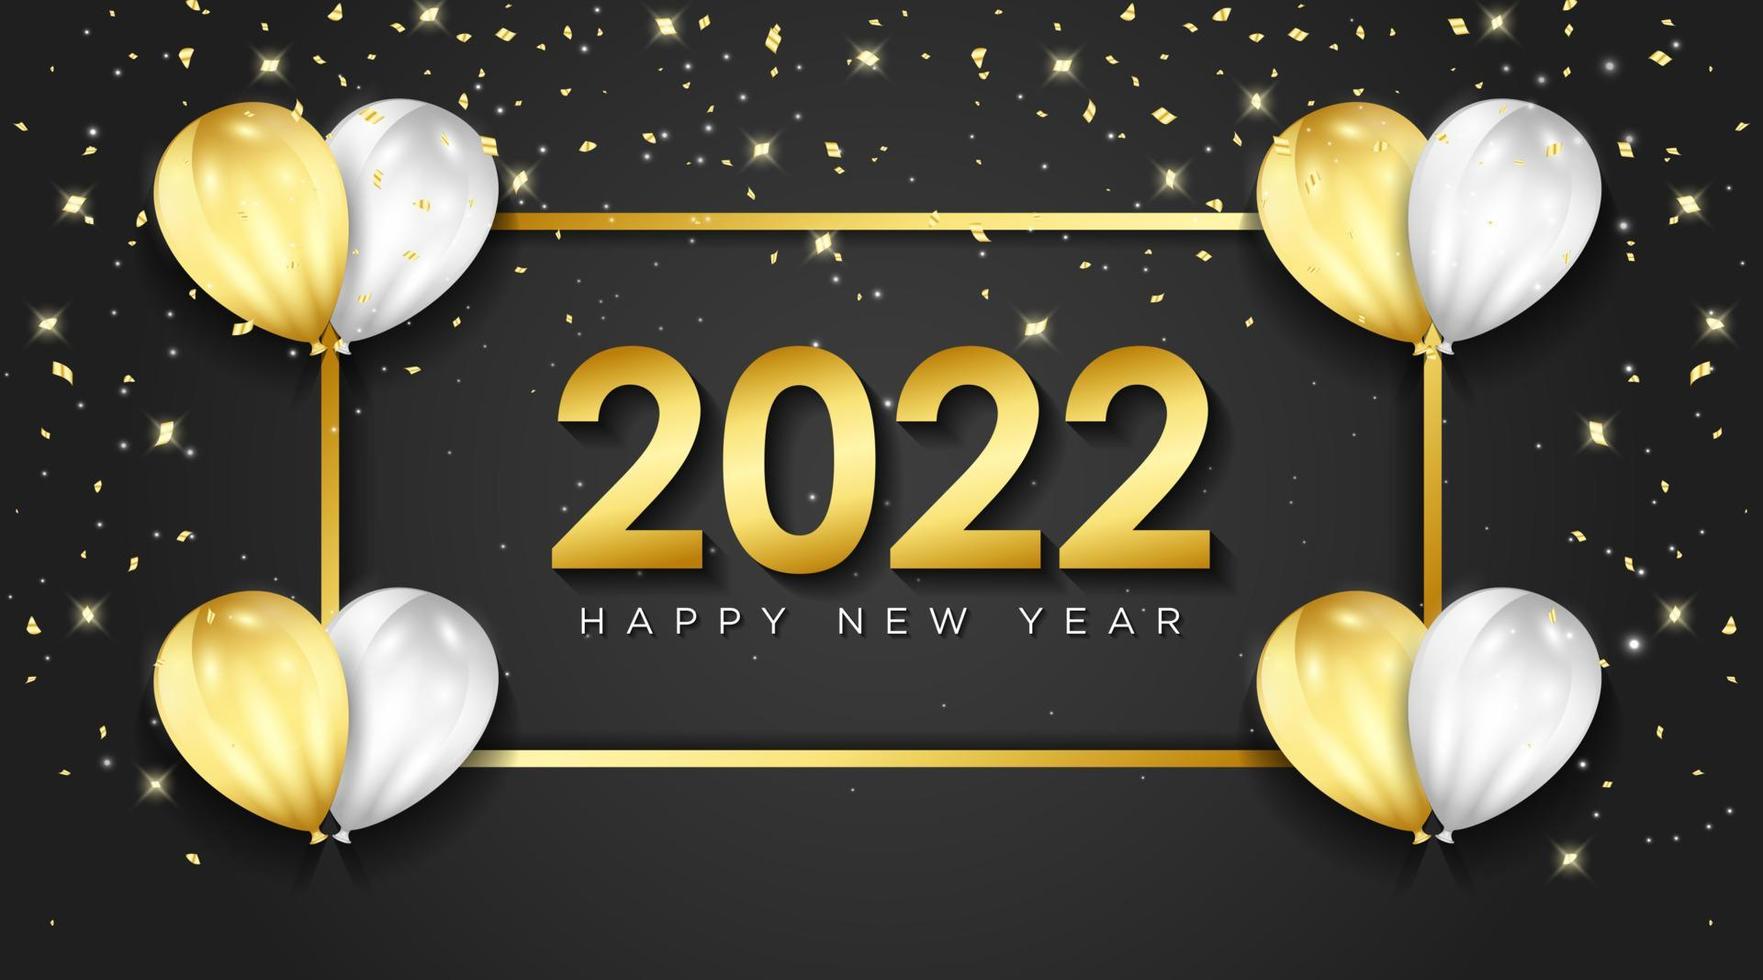 gelukkig nieuwjaar 2022 wenskaart met realistische gouden en witte ballonnen viering achtergrondontwerp voor wenskaart, poster, banner. vectorillustratie. vector